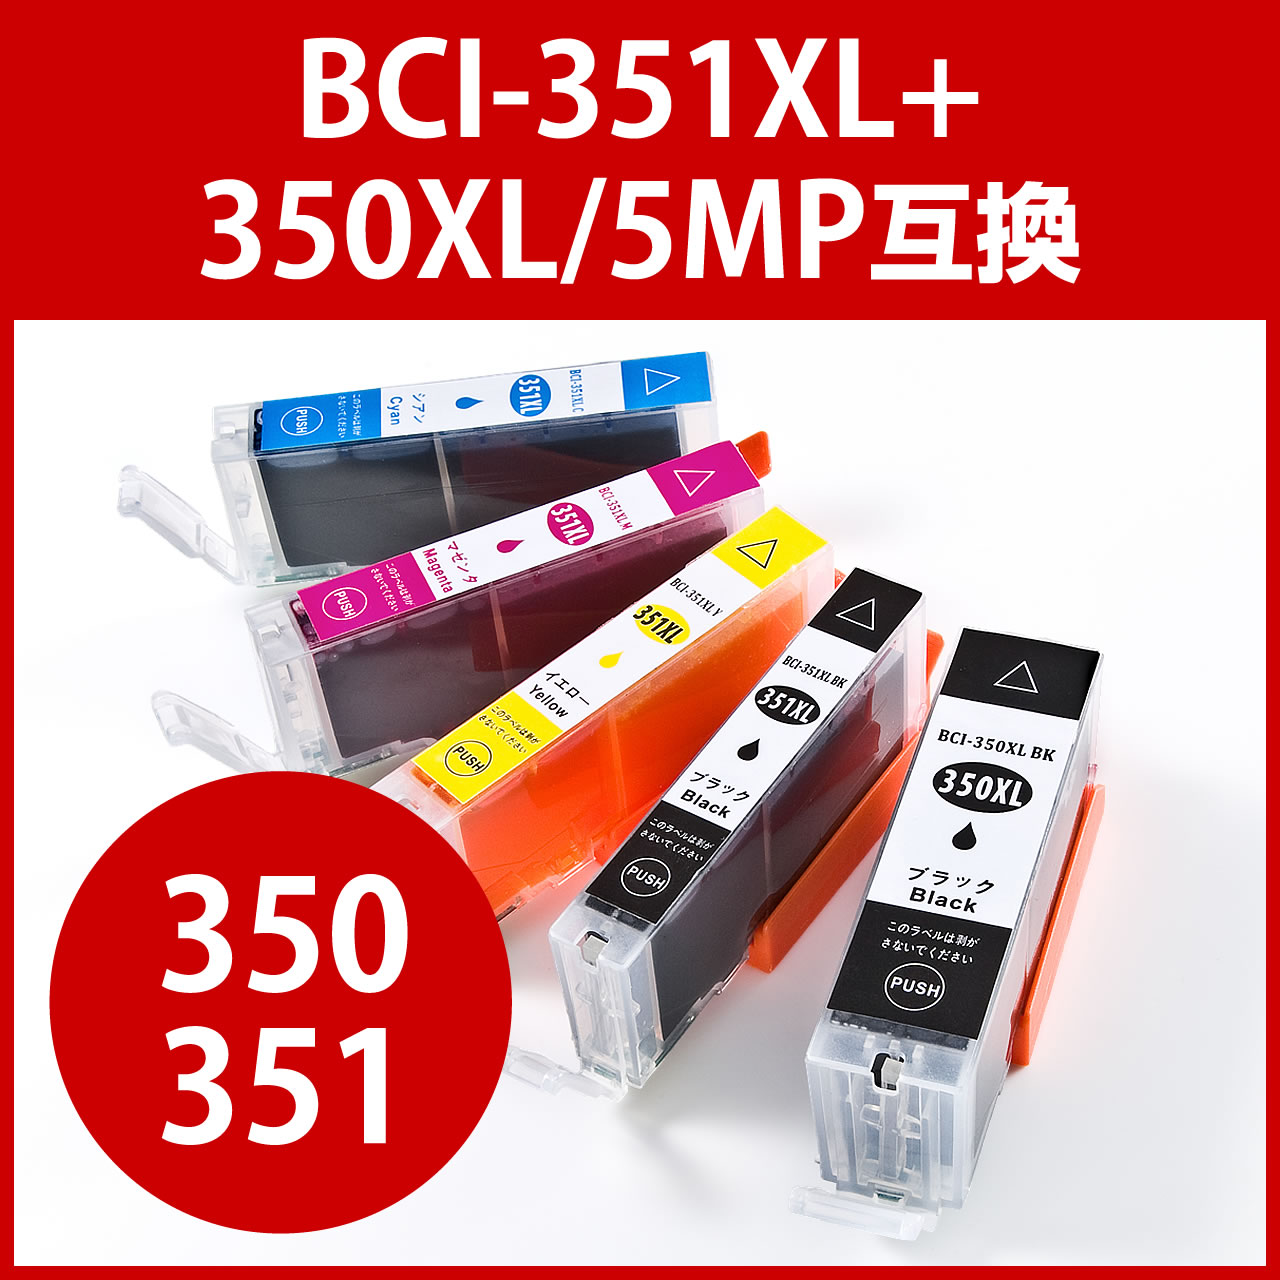 互換インク キャノン BCI-351XL+350XL/5MP対応（大容量・5色パック） 300-C3503515Pの販売商品  通販ならサンワダイレクト